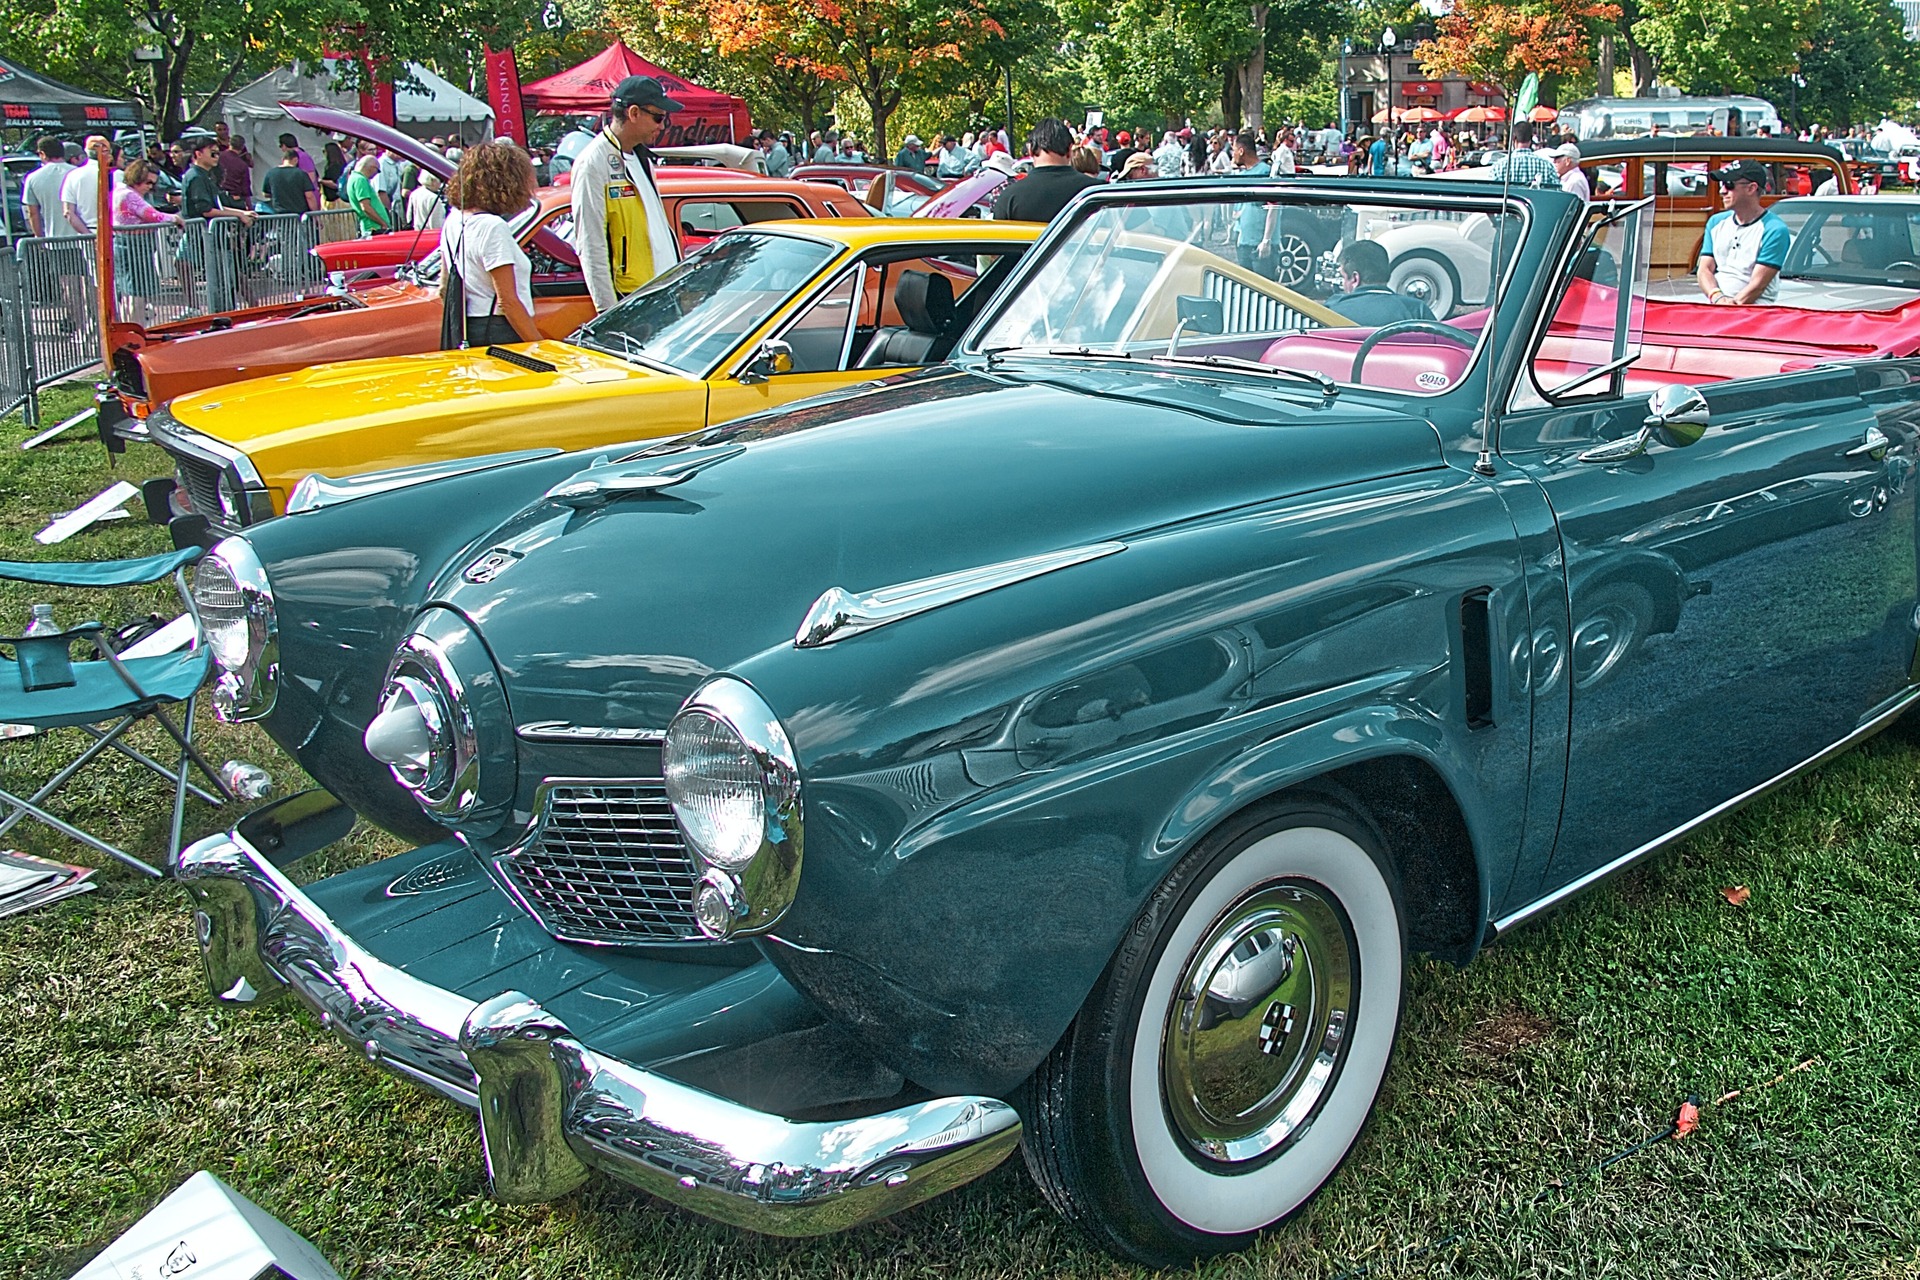 vintage car show